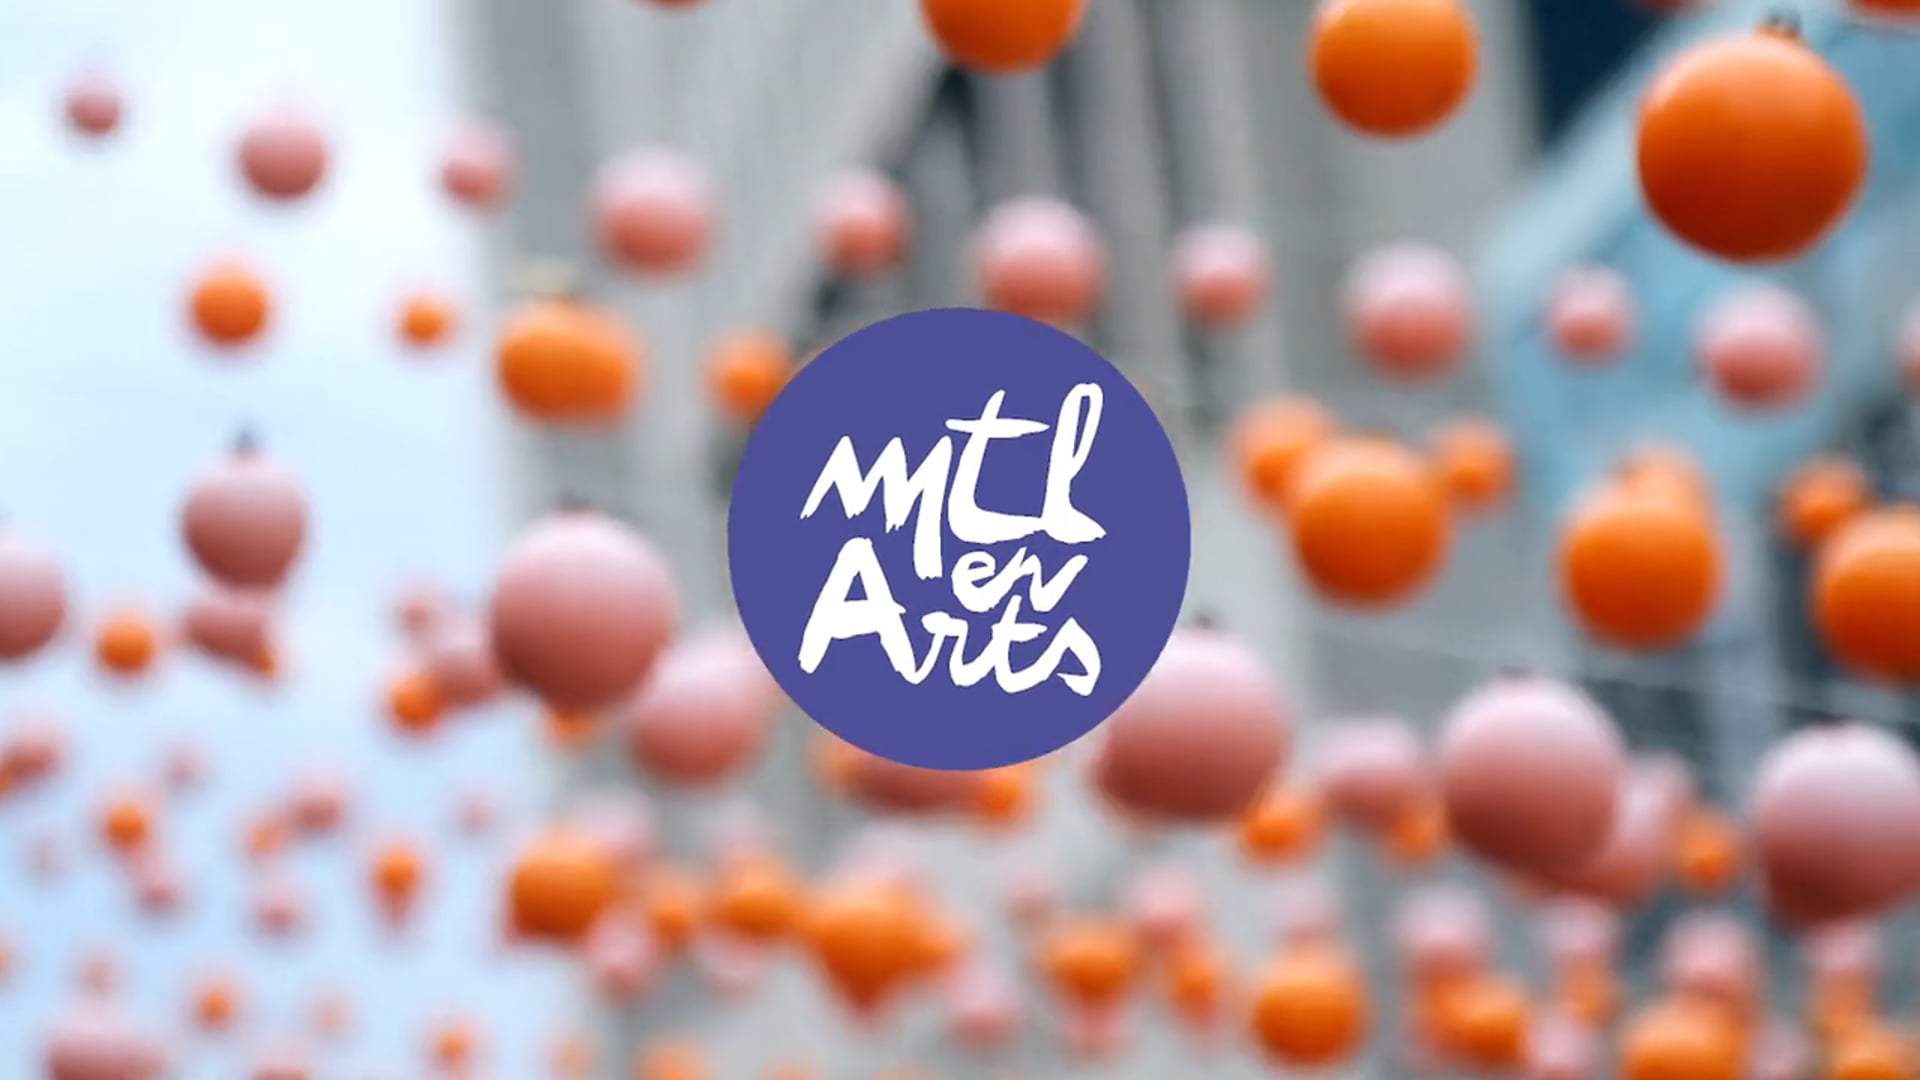 MTL en Arts 2019